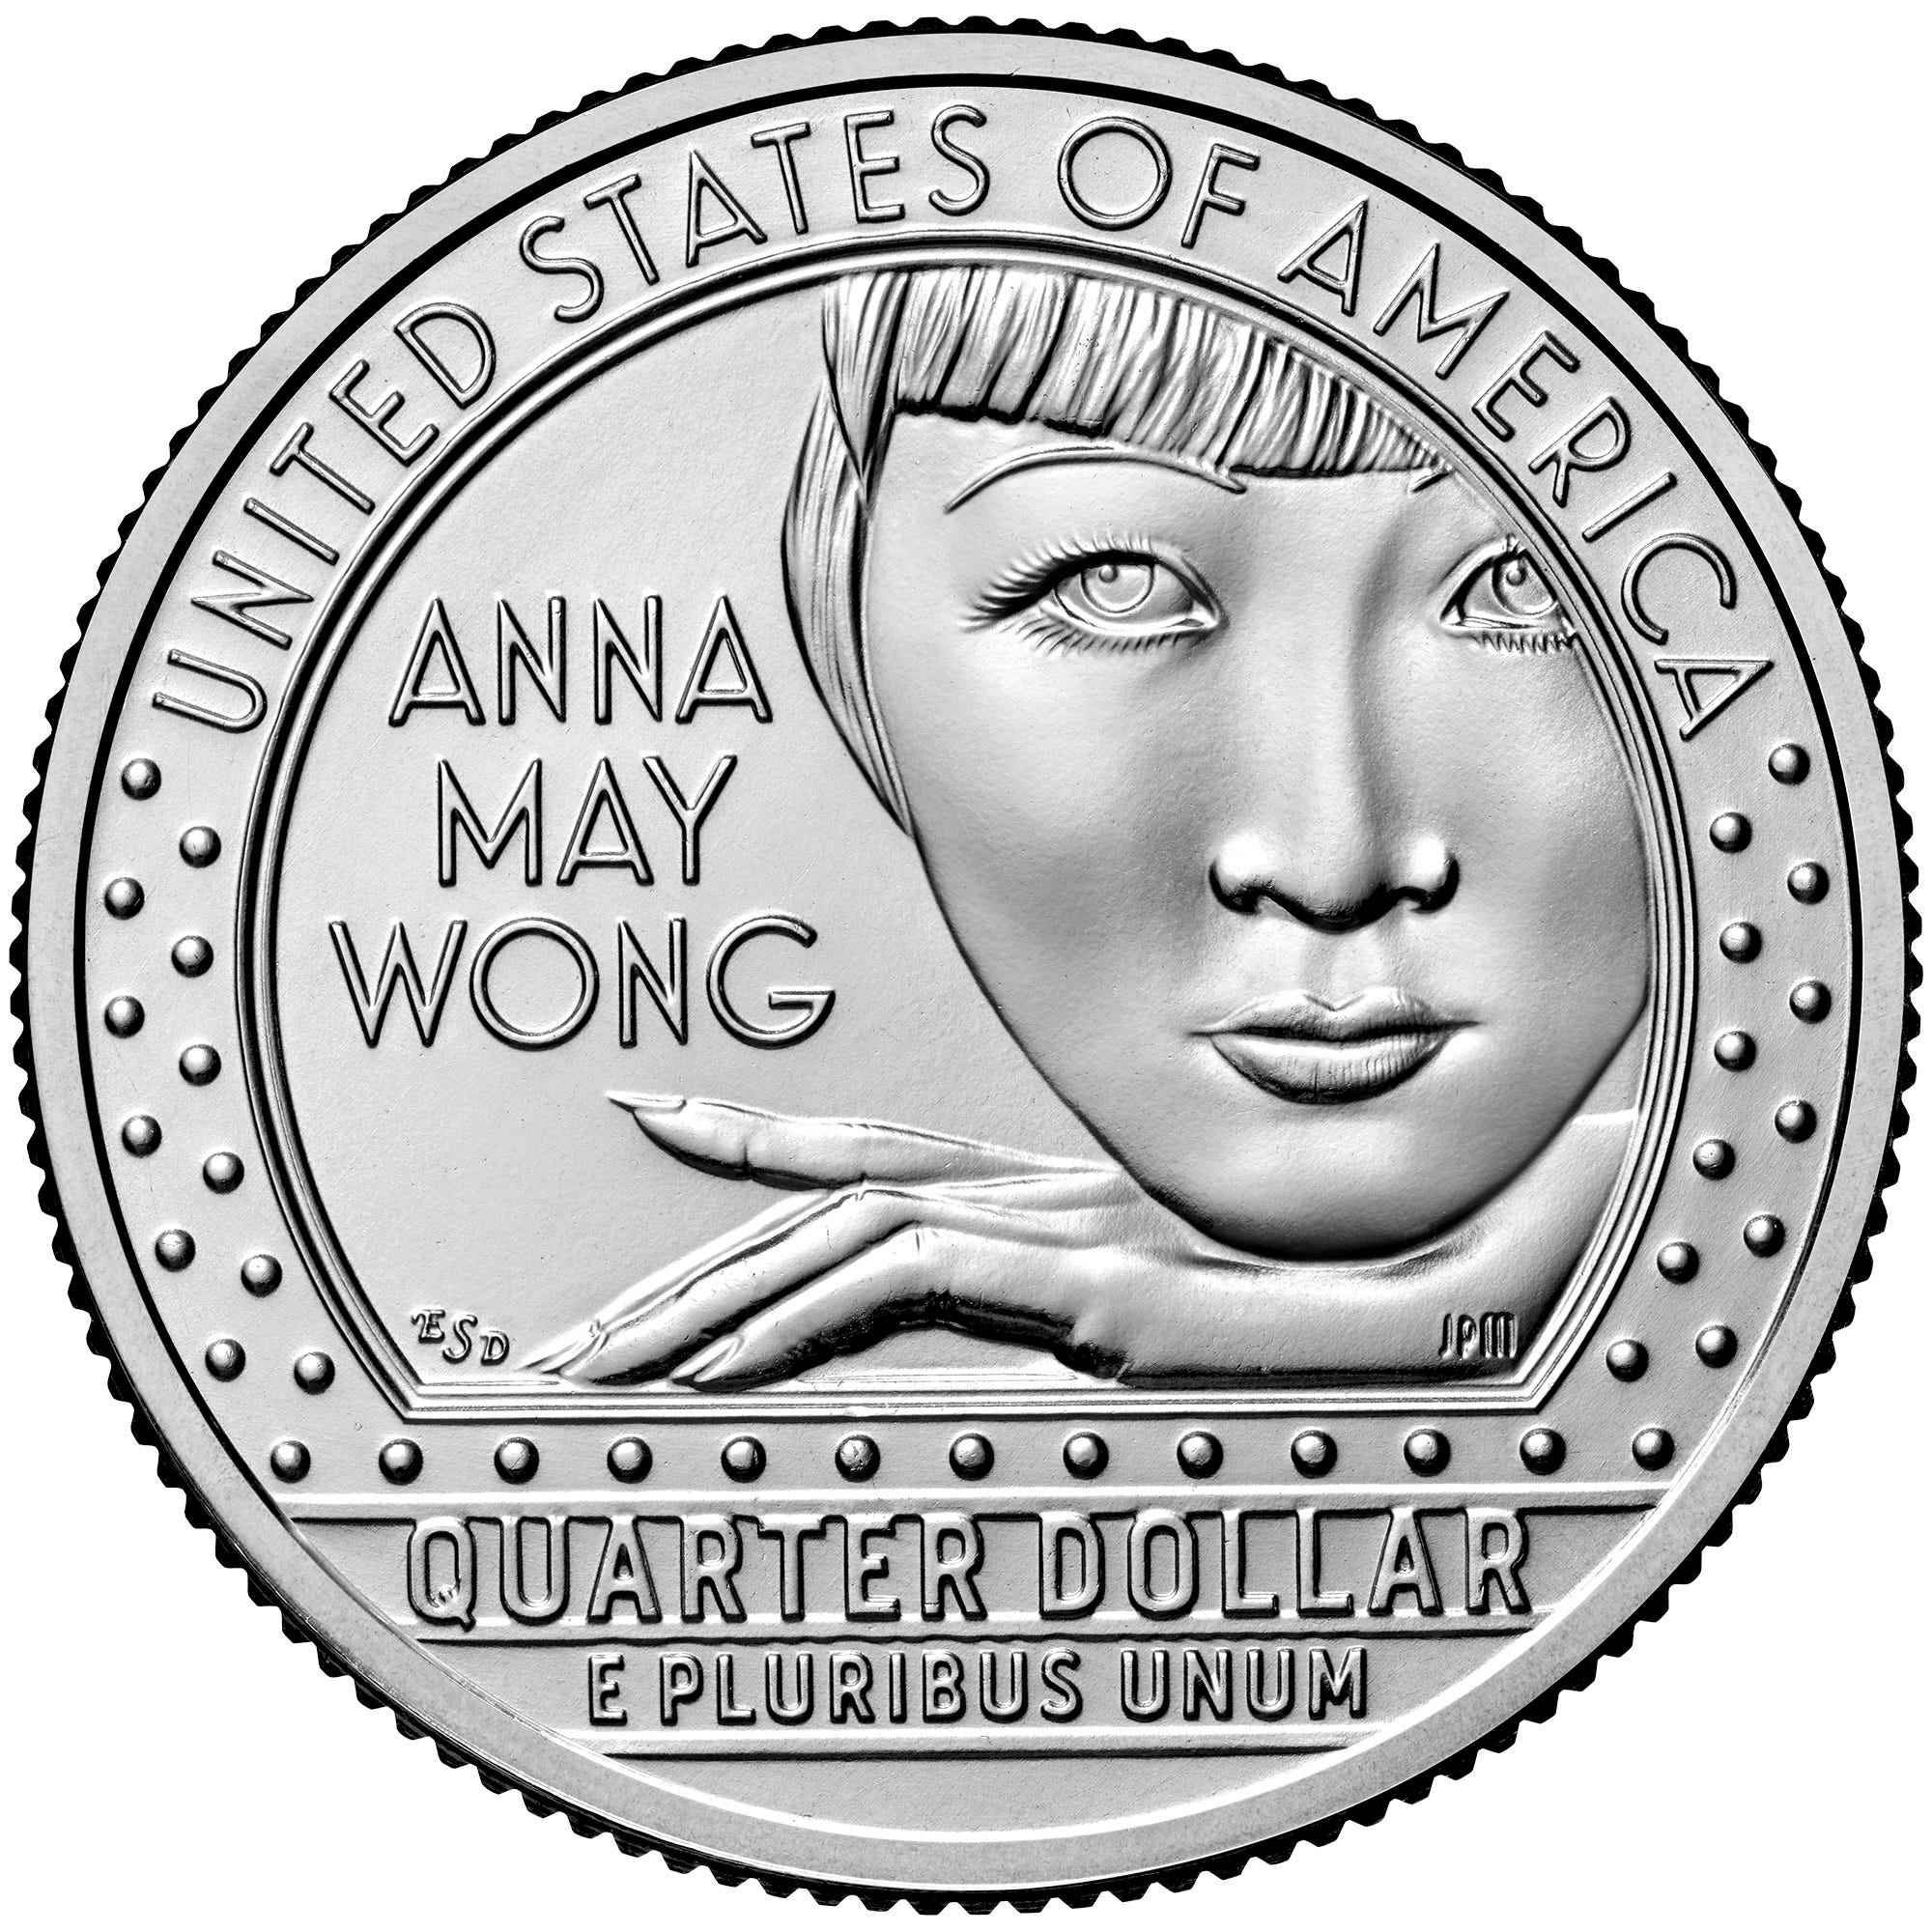 Münzbild der Vereinigten Staaten von der United States Mint.